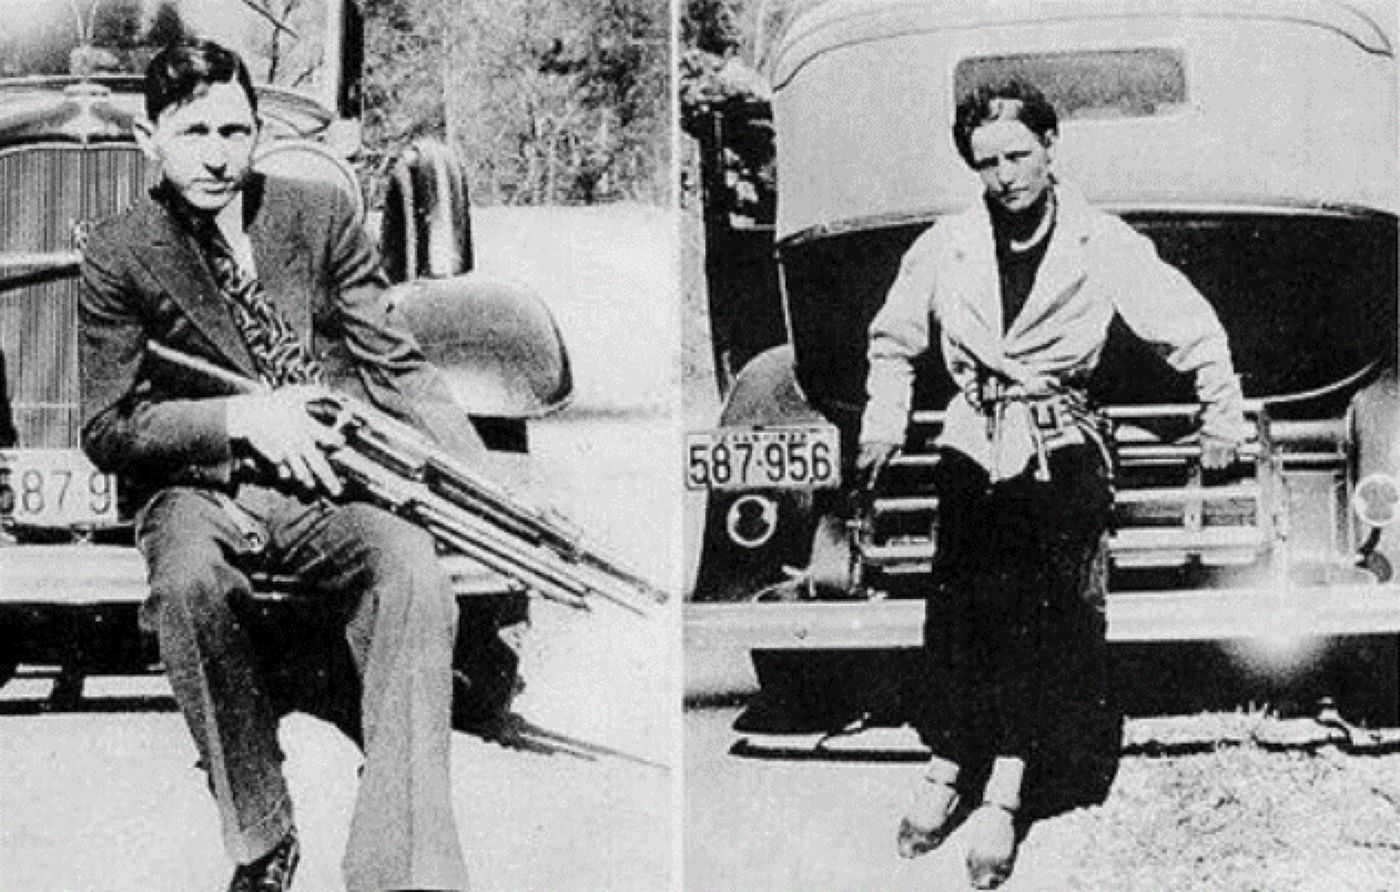 Ultimul sărut al gangsterilor Bonnie și Clyde înainte de a fi împușcați, dezvăluit într-o fotografie. Povestea care a scris istorie